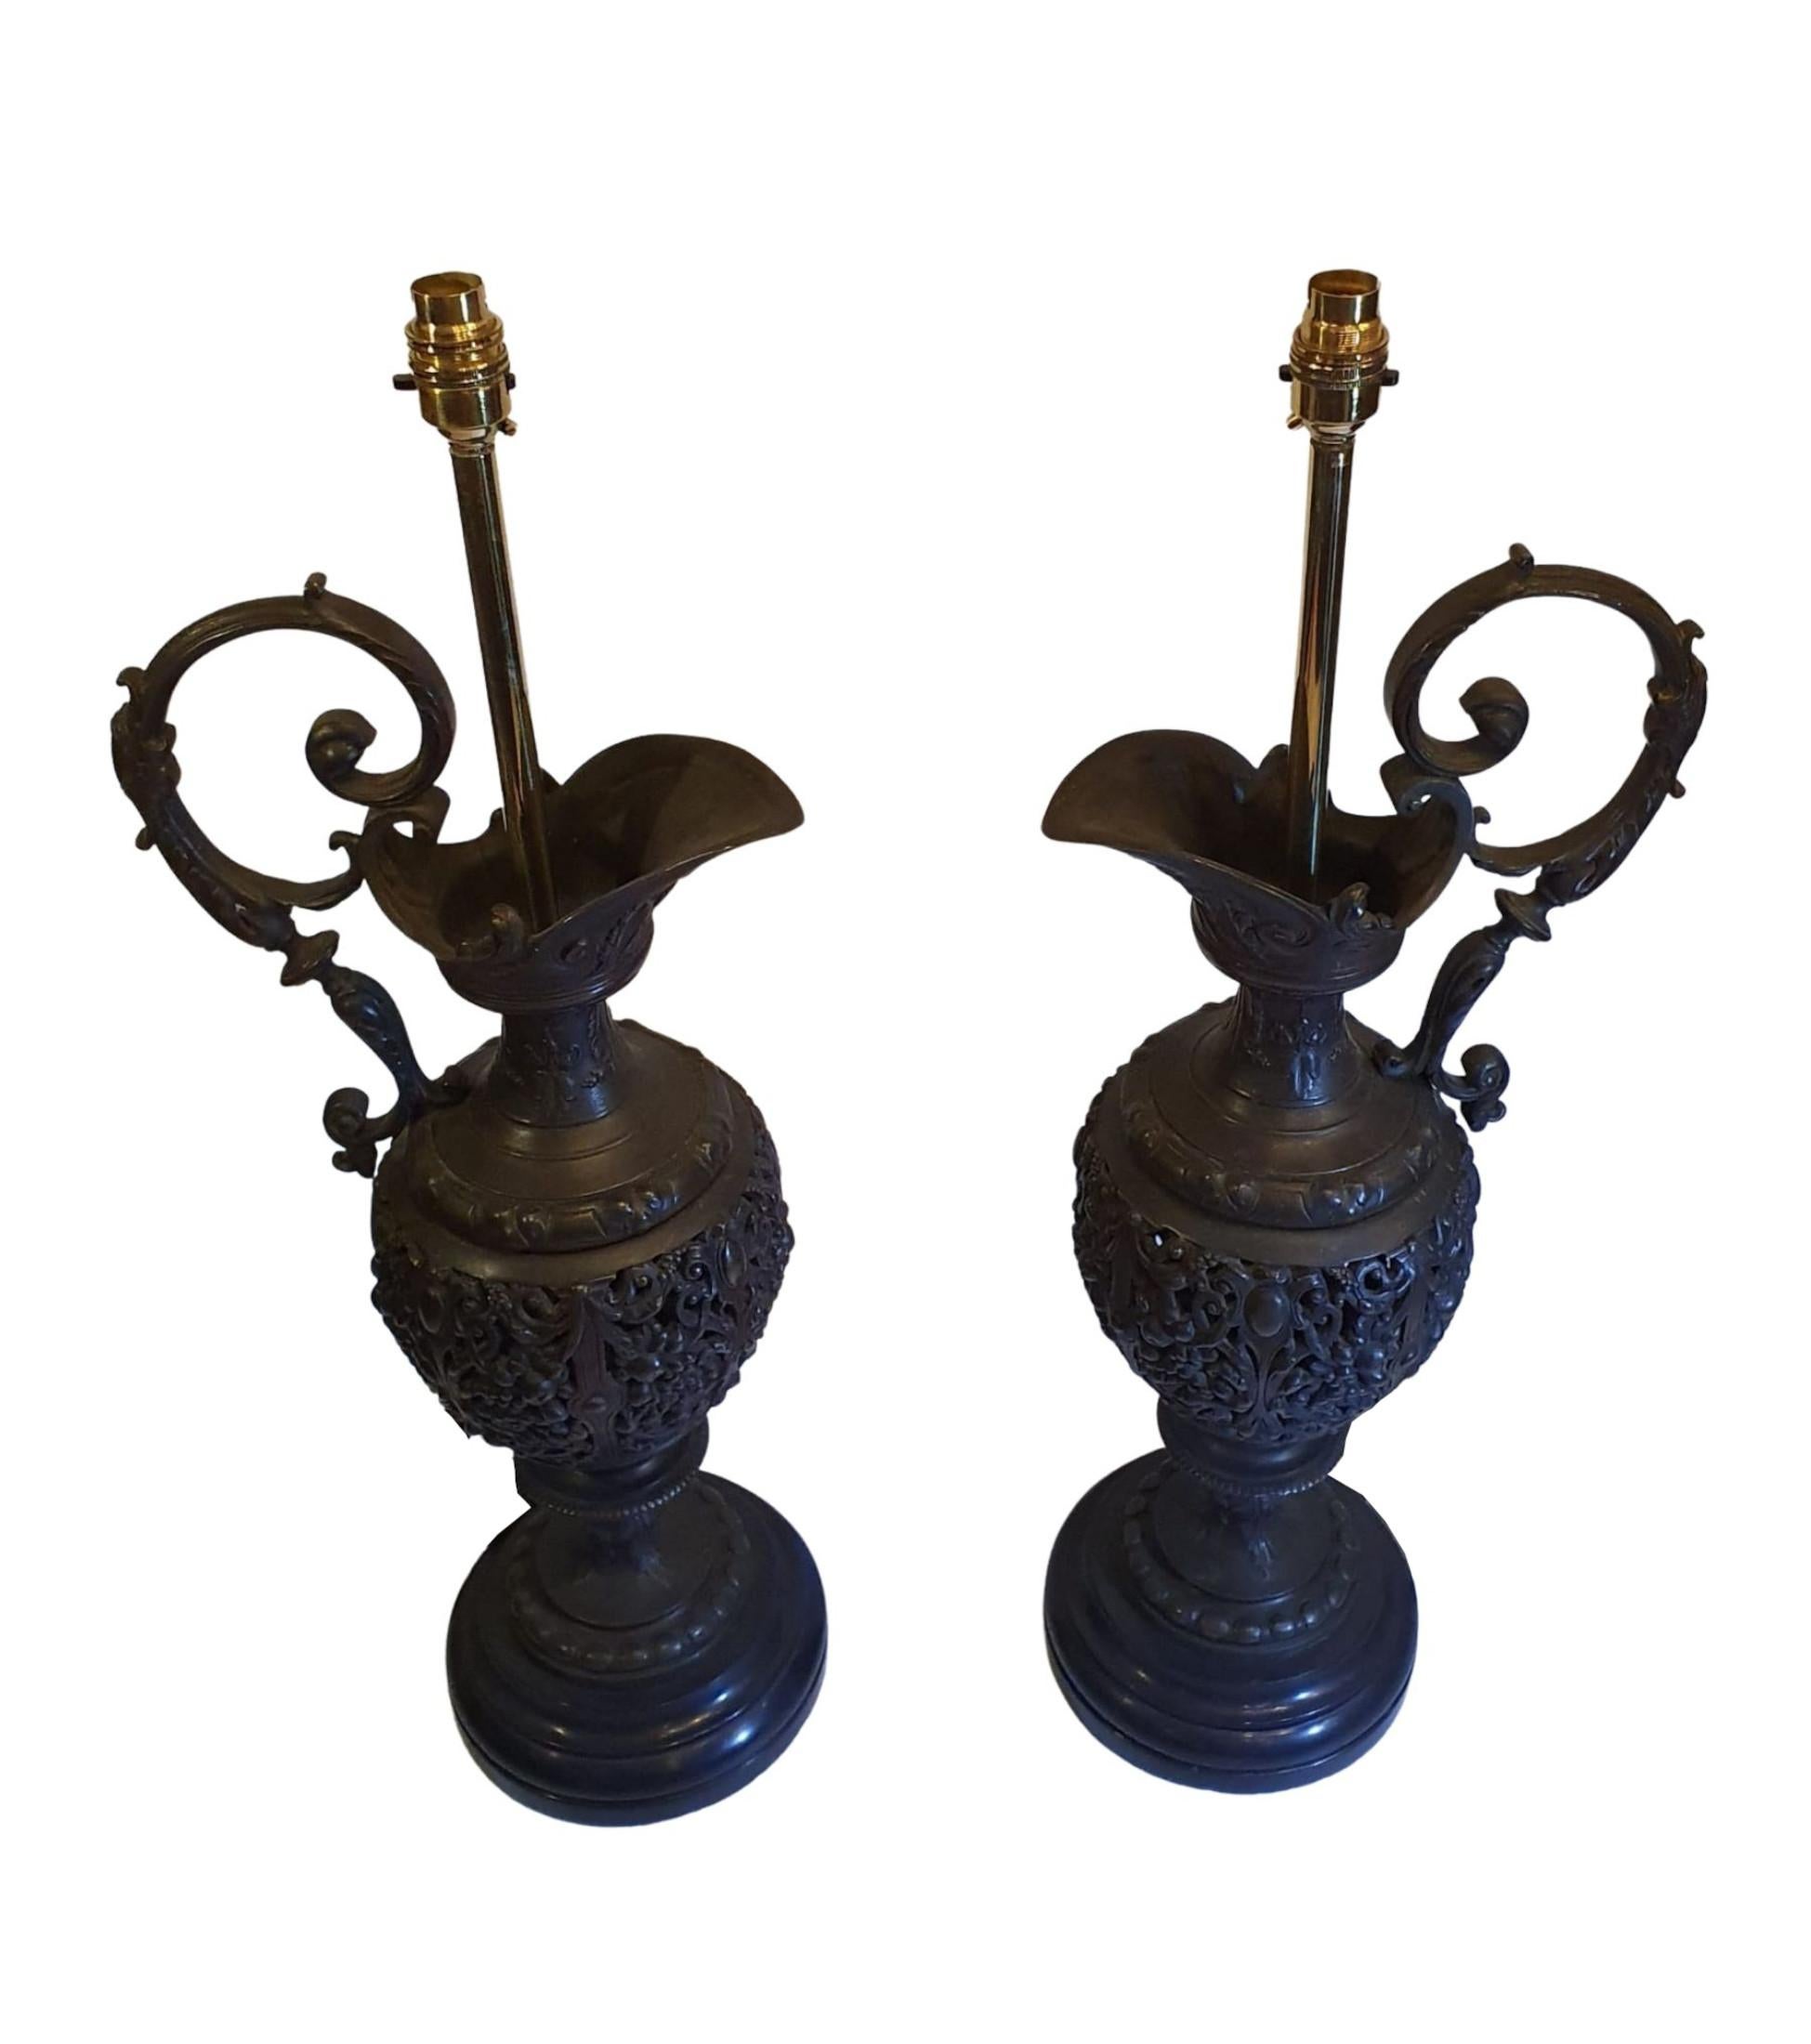 Ein sehr seltenes Paar Bronzeröhren aus dem 19. Jahrhundert, die in Tischlampen umgewandelt wurden. Der wunderschön reliefierte Korpus ist mit kunstvollen Schnörkeln und Blattmotiven versehen. Die eleganten, geschwungenen Griffe ruhen auf einem